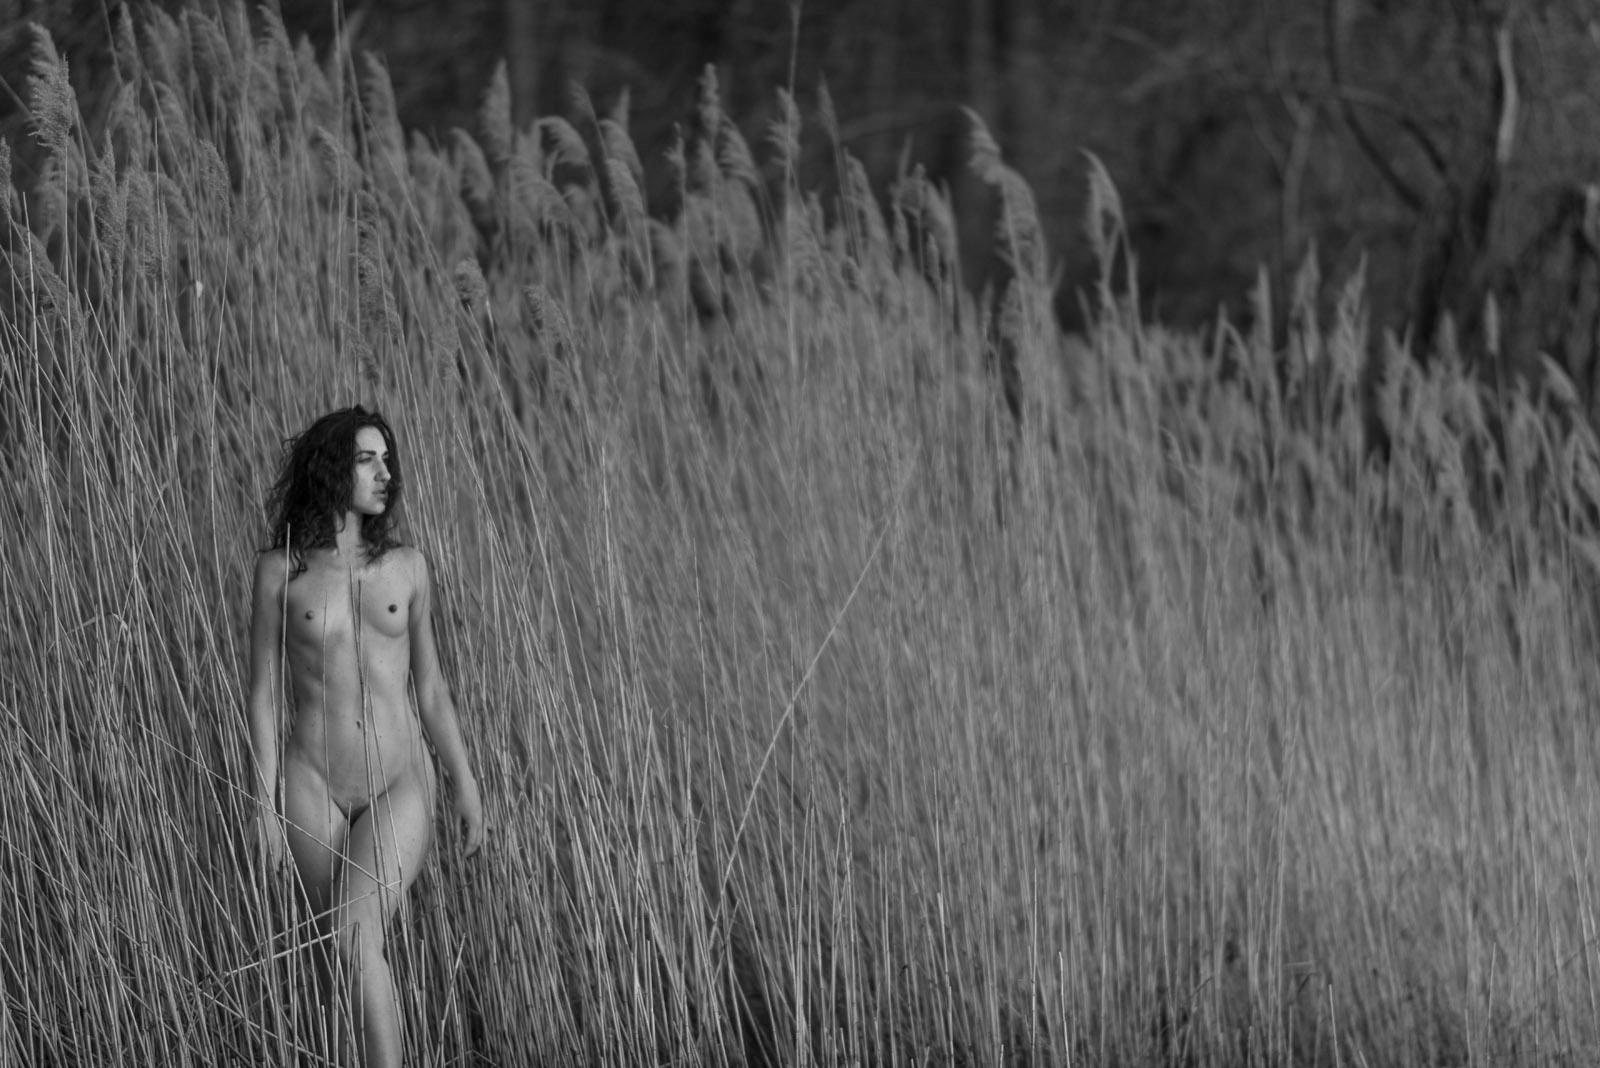 John Mazlish Nude Photograph – Frau im Schilf